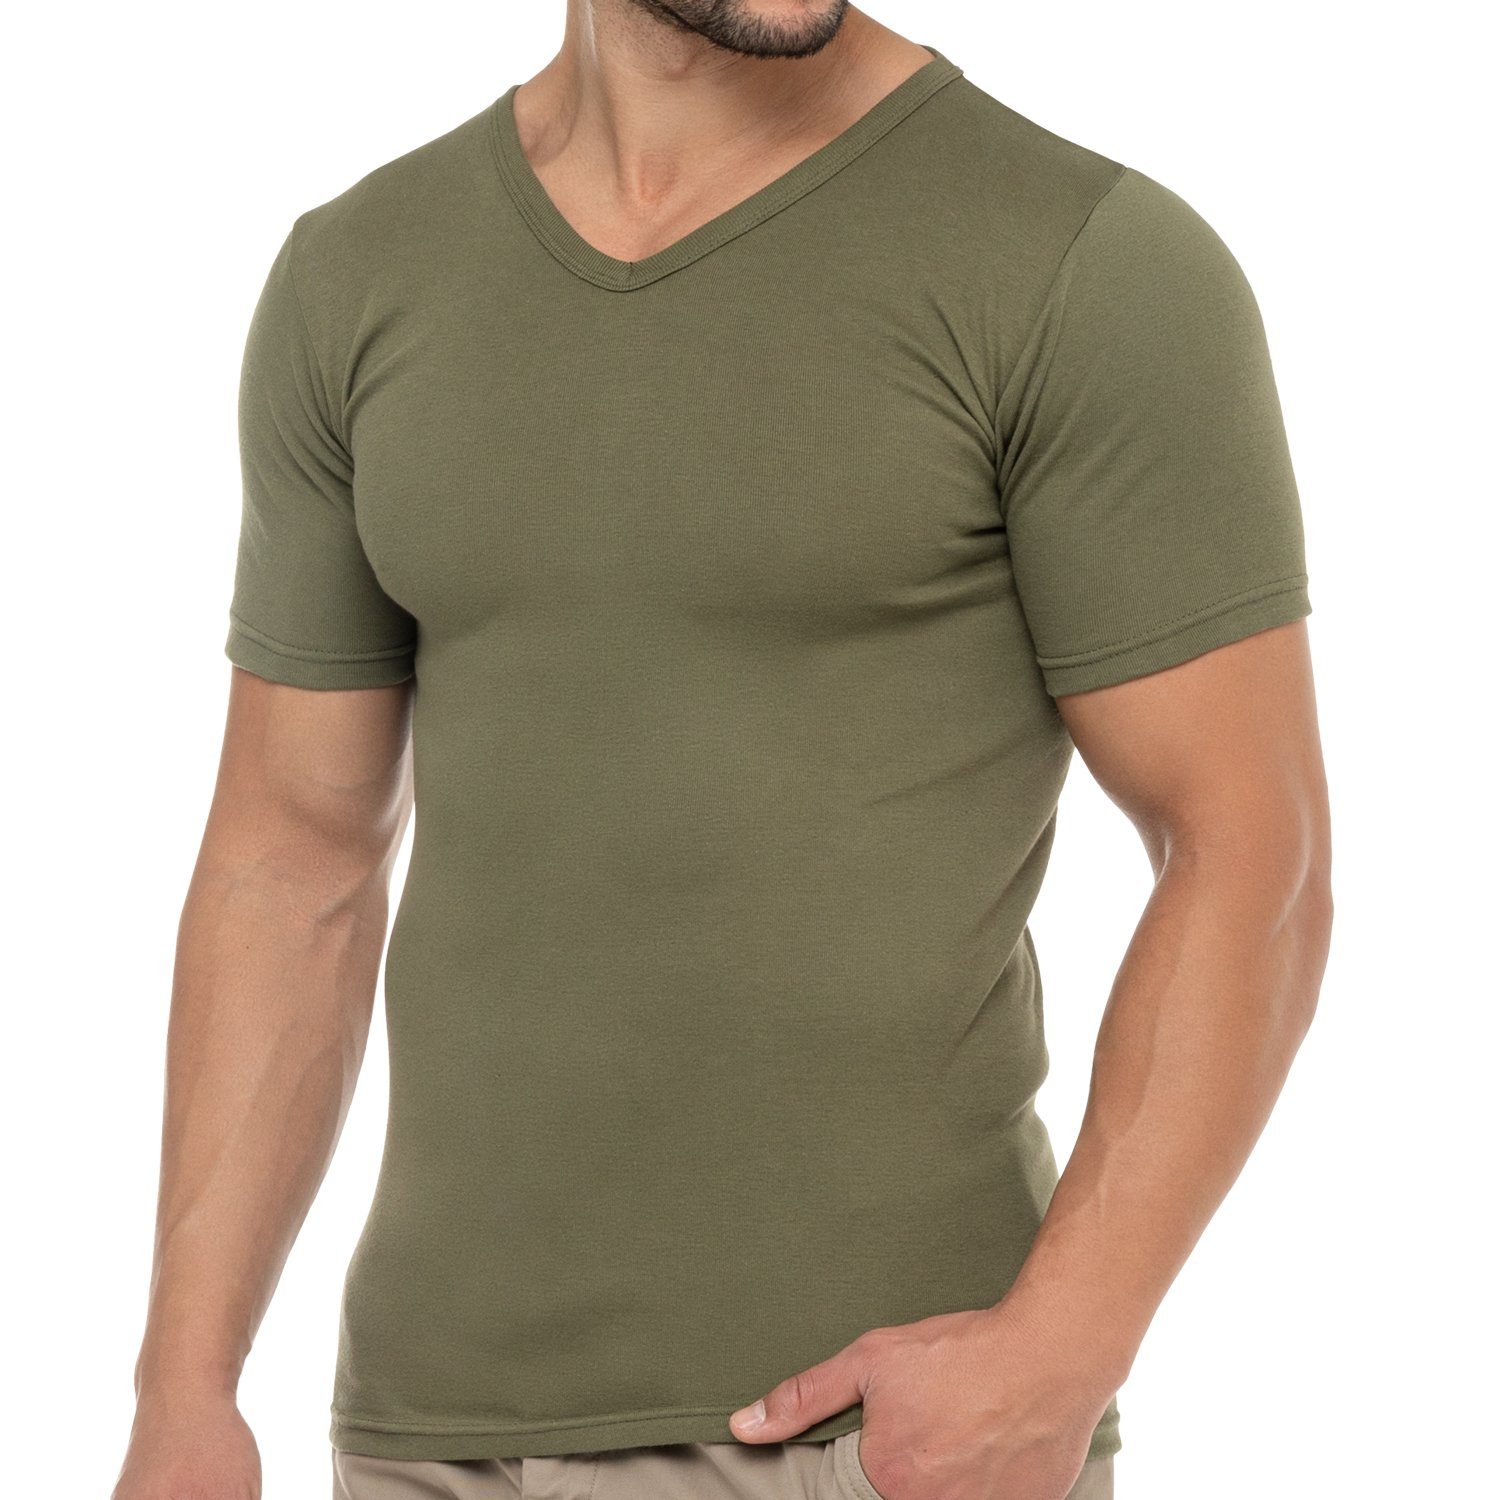 celodoro Kurzarmshirt Herren Business T-Shirt V-Neck Feinripp Baumwolle (1er/3er) 1 x Olive